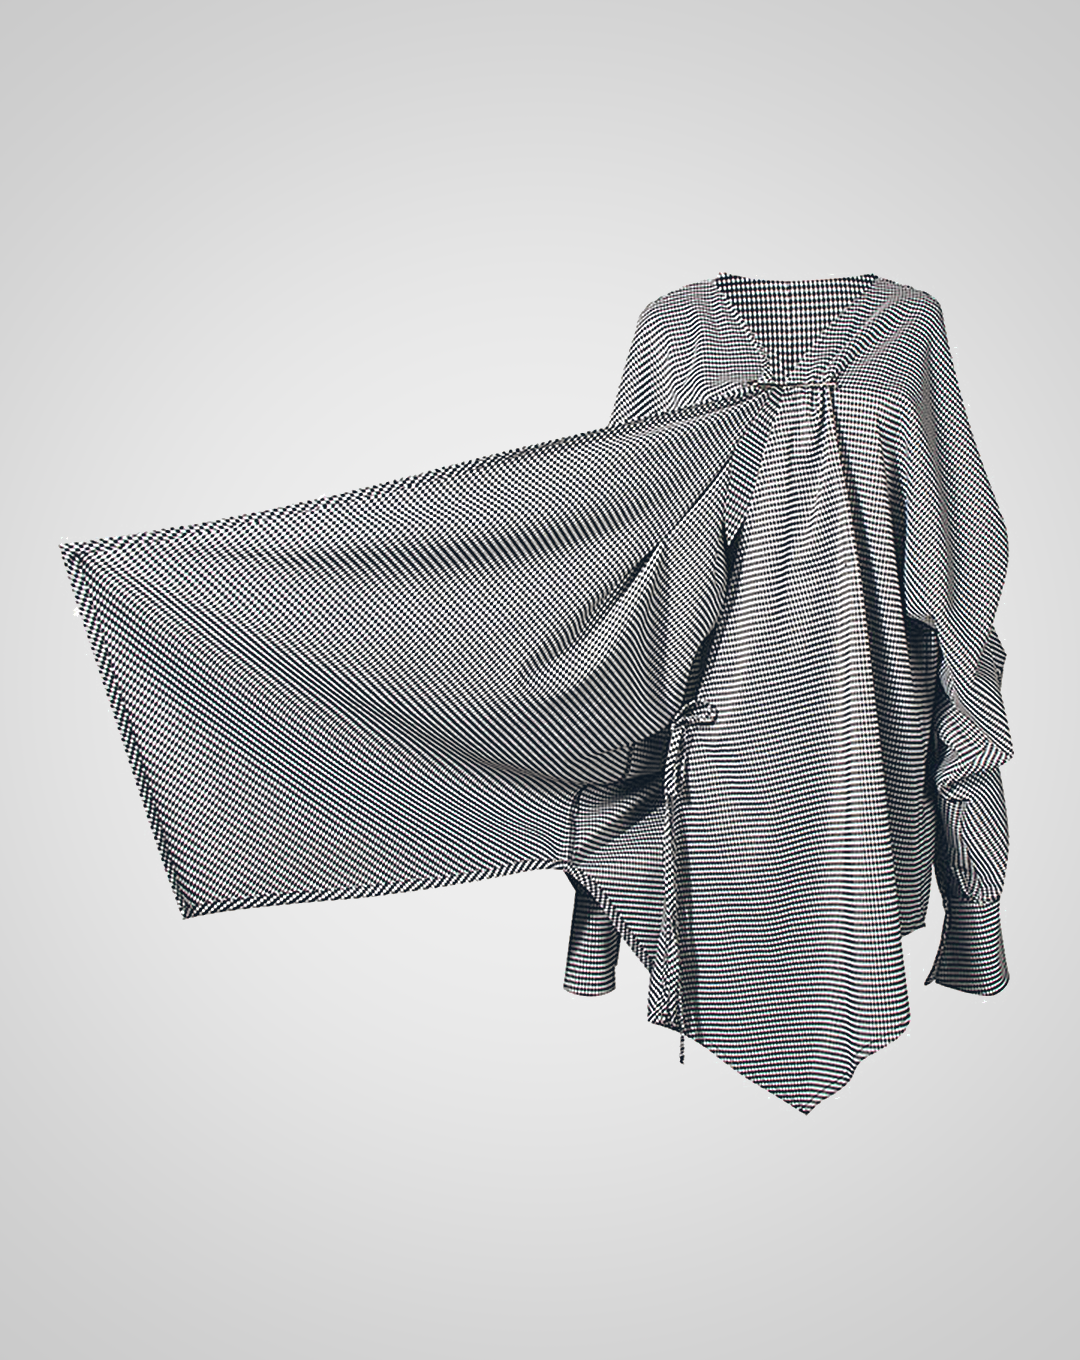 ♀Handkerchief Hem Plaid Shirt & Wrap Skirt